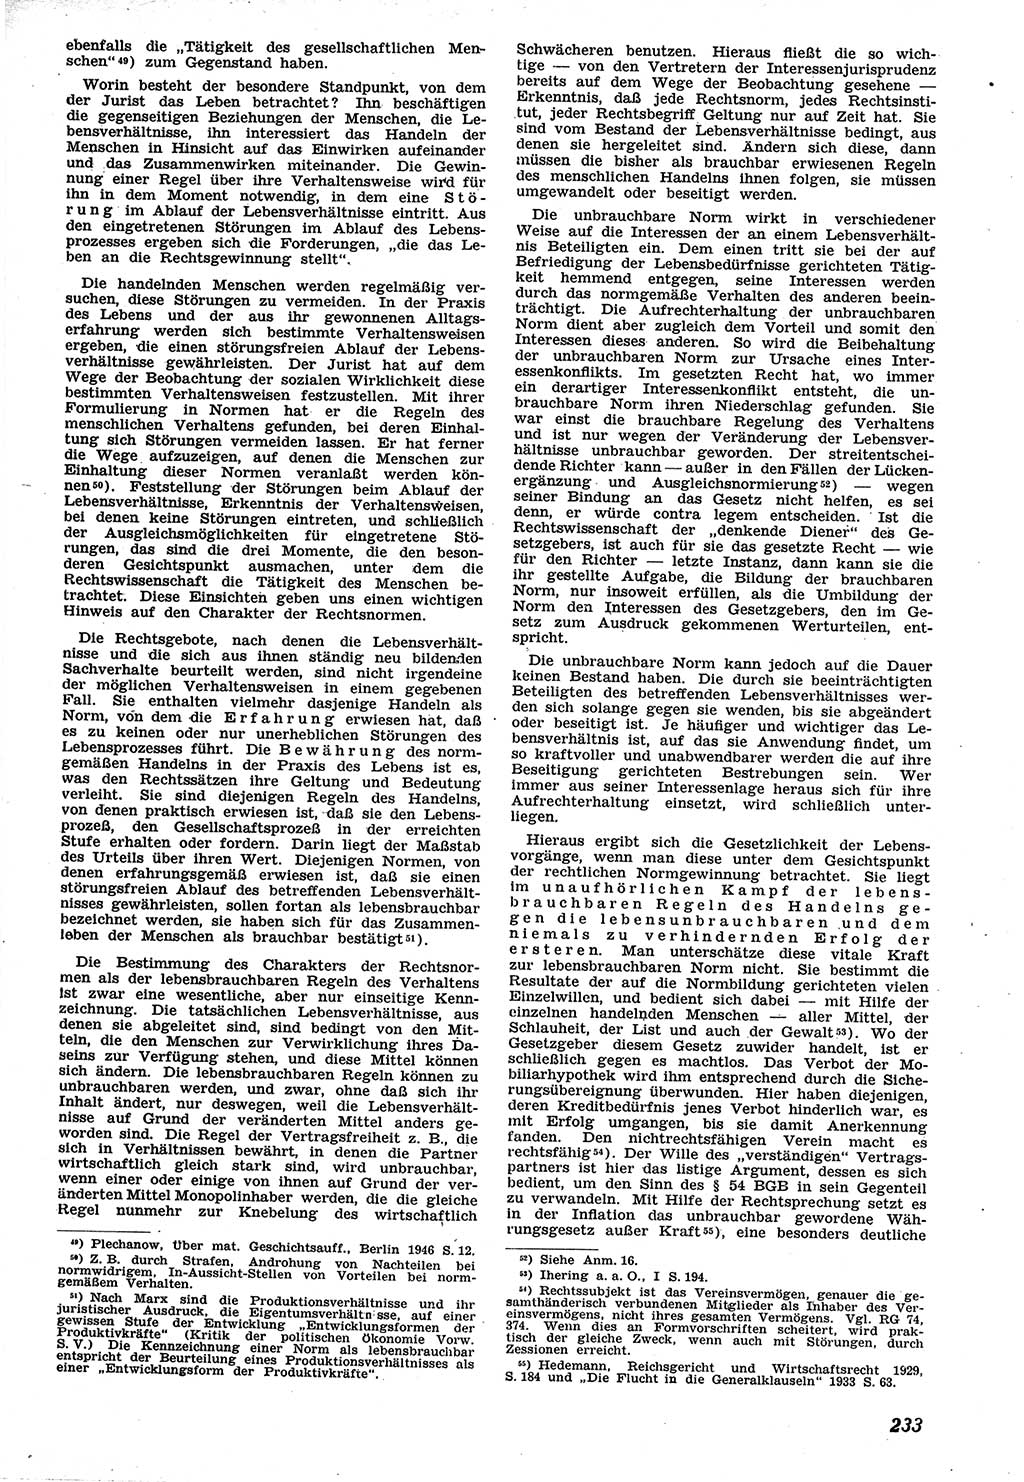 Neue Justiz (NJ), Zeitschrift für Recht und Rechtswissenschaft [Sowjetische Besatzungszone (SBZ) Deutschland], 1. Jahrgang 1947, Seite 233 (NJ SBZ Dtl. 1947, S. 233)